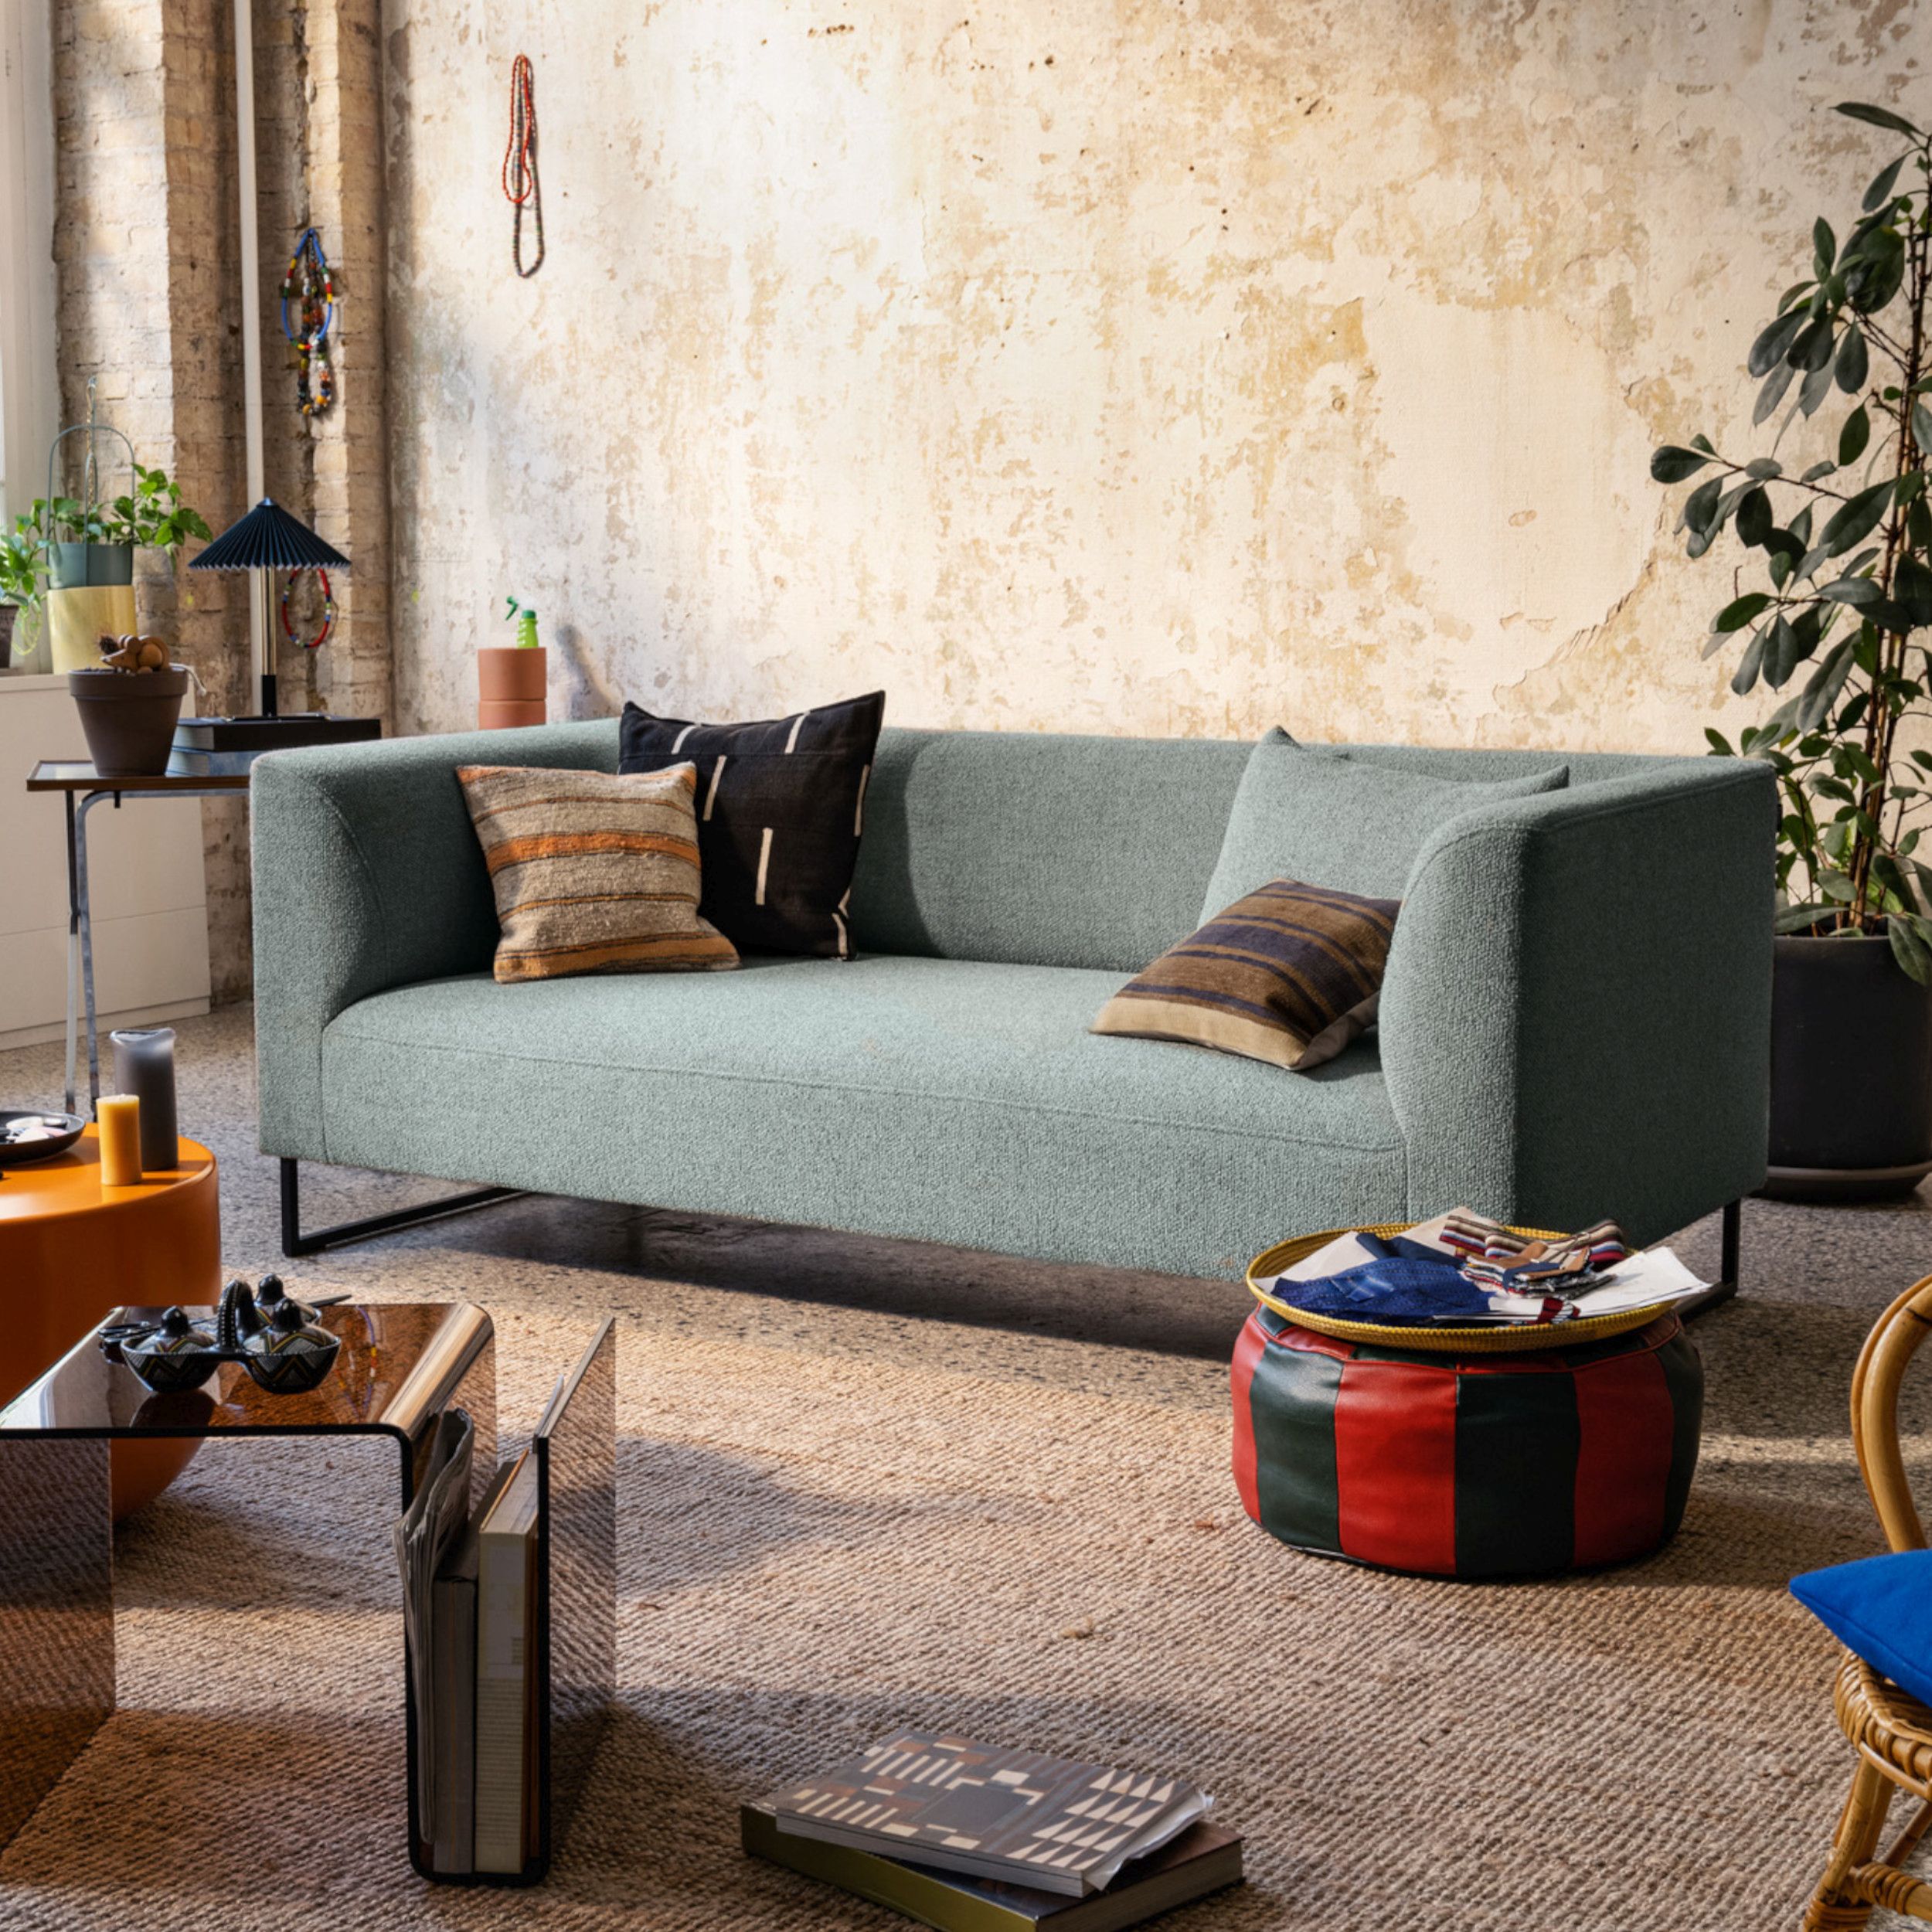 Sofa Collection Freistil 160 von Rolf Benz als Milieubild seitlich in grau